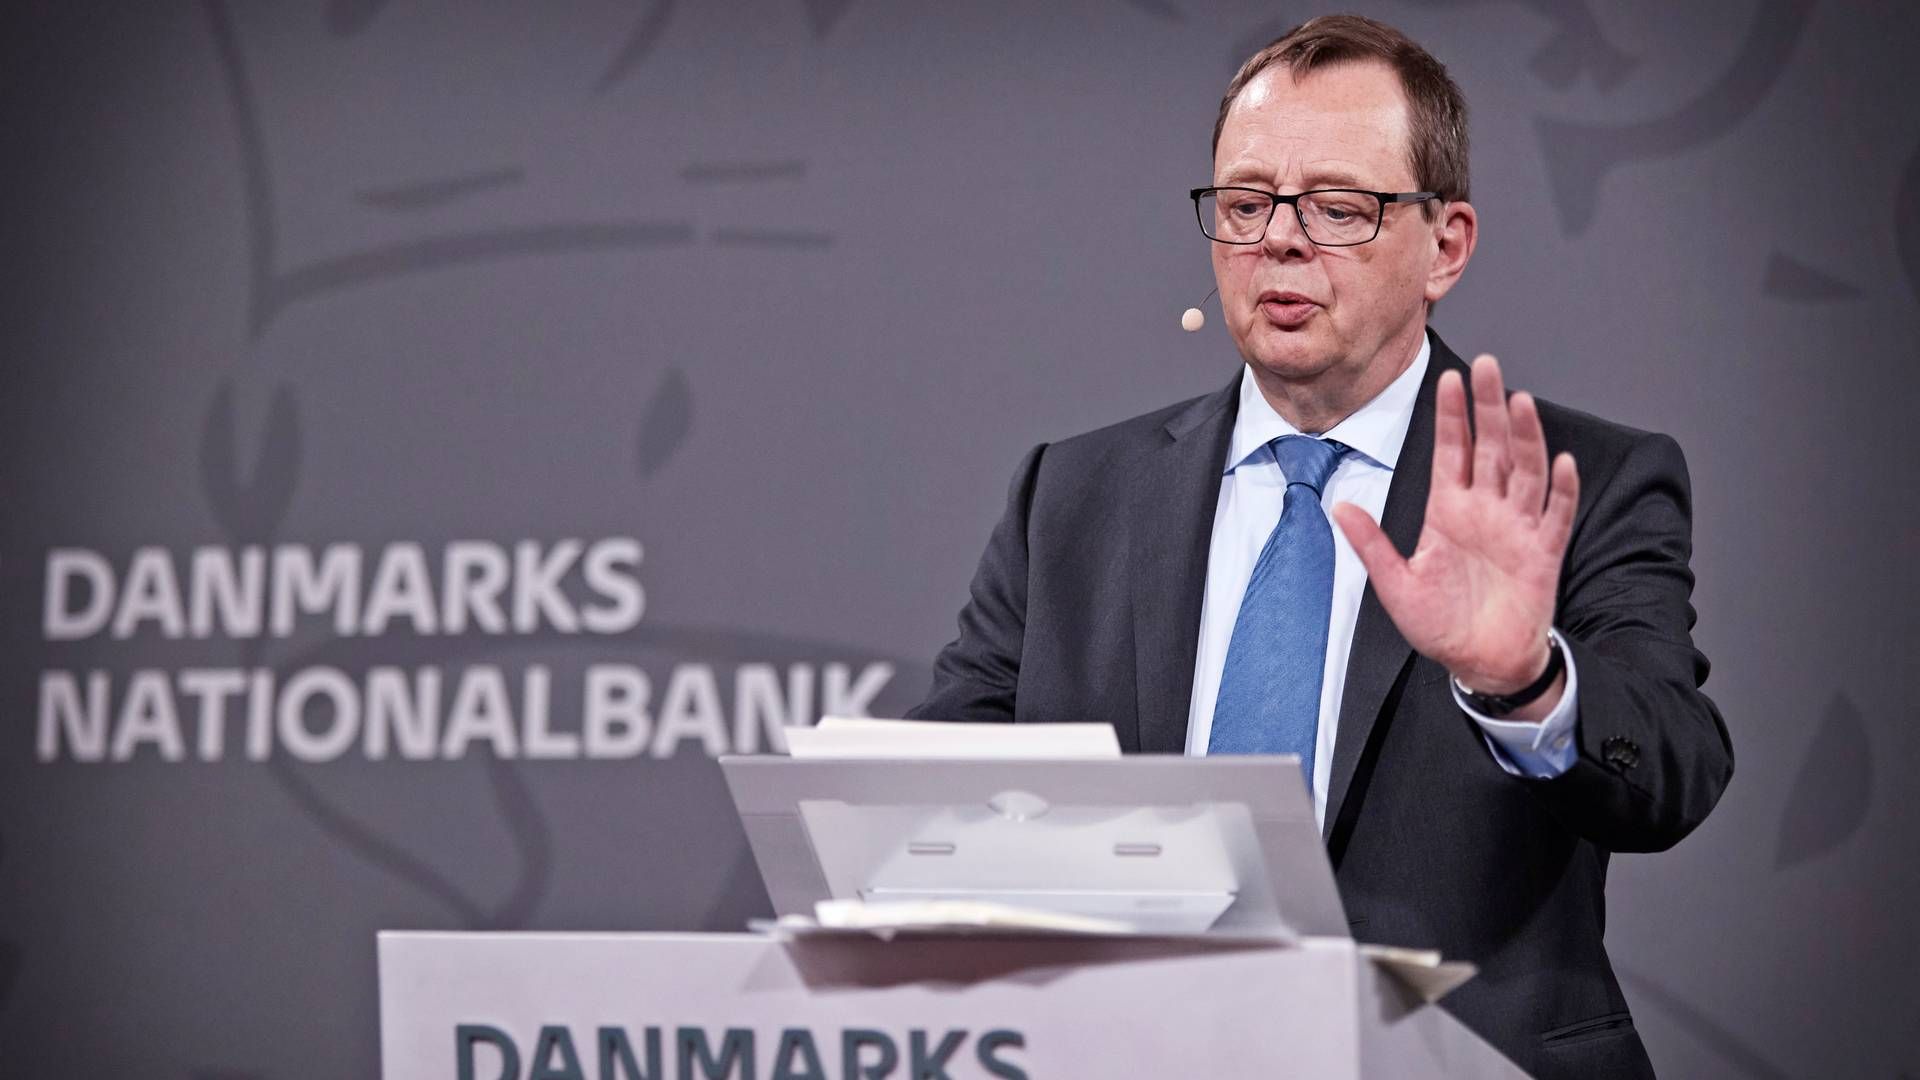 Nationalbankdirektør Christian Kettel Thomsen står i spidsen for den syvende rentestigning siden sommer. | Foto: Jens Dresling/Ritzau Scanpix